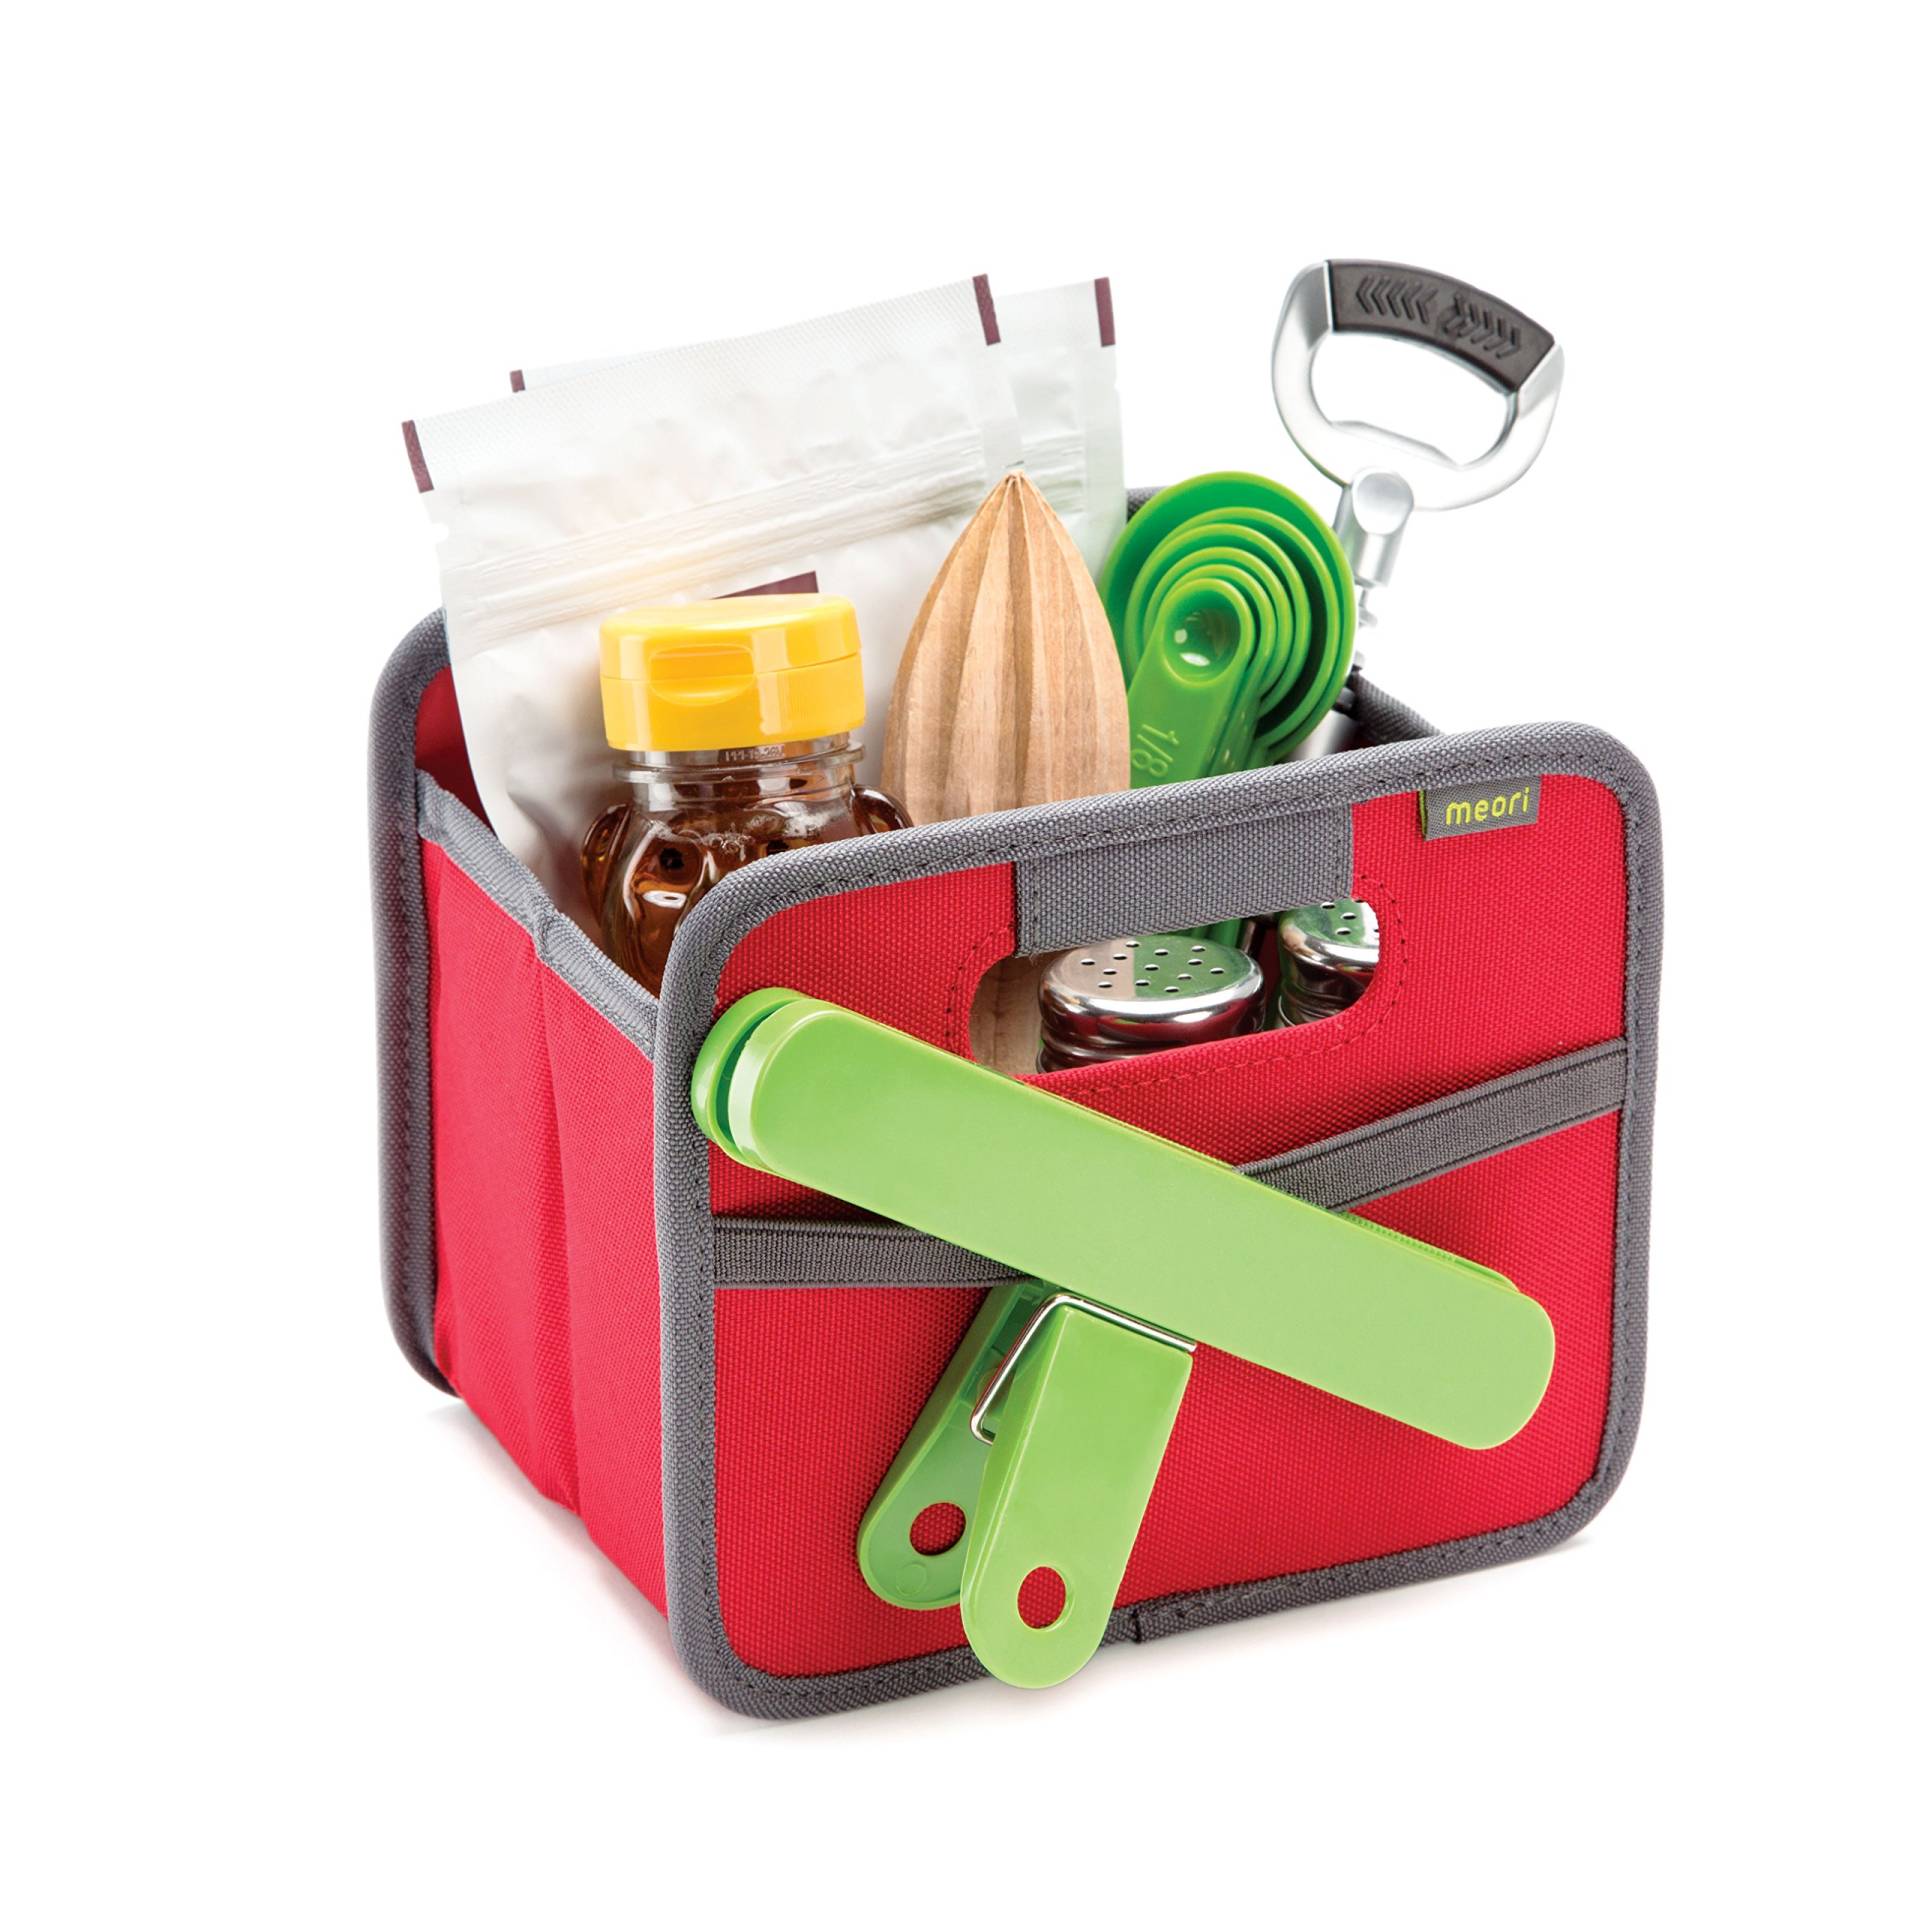 meori Faltbox Mini in Rot – Kleine Klappbox mit Griffen – Geschenkidee und Allzweck Aufbewahrungslösung - A100084 - 16,5 x 12,5 x 14 cm von meori